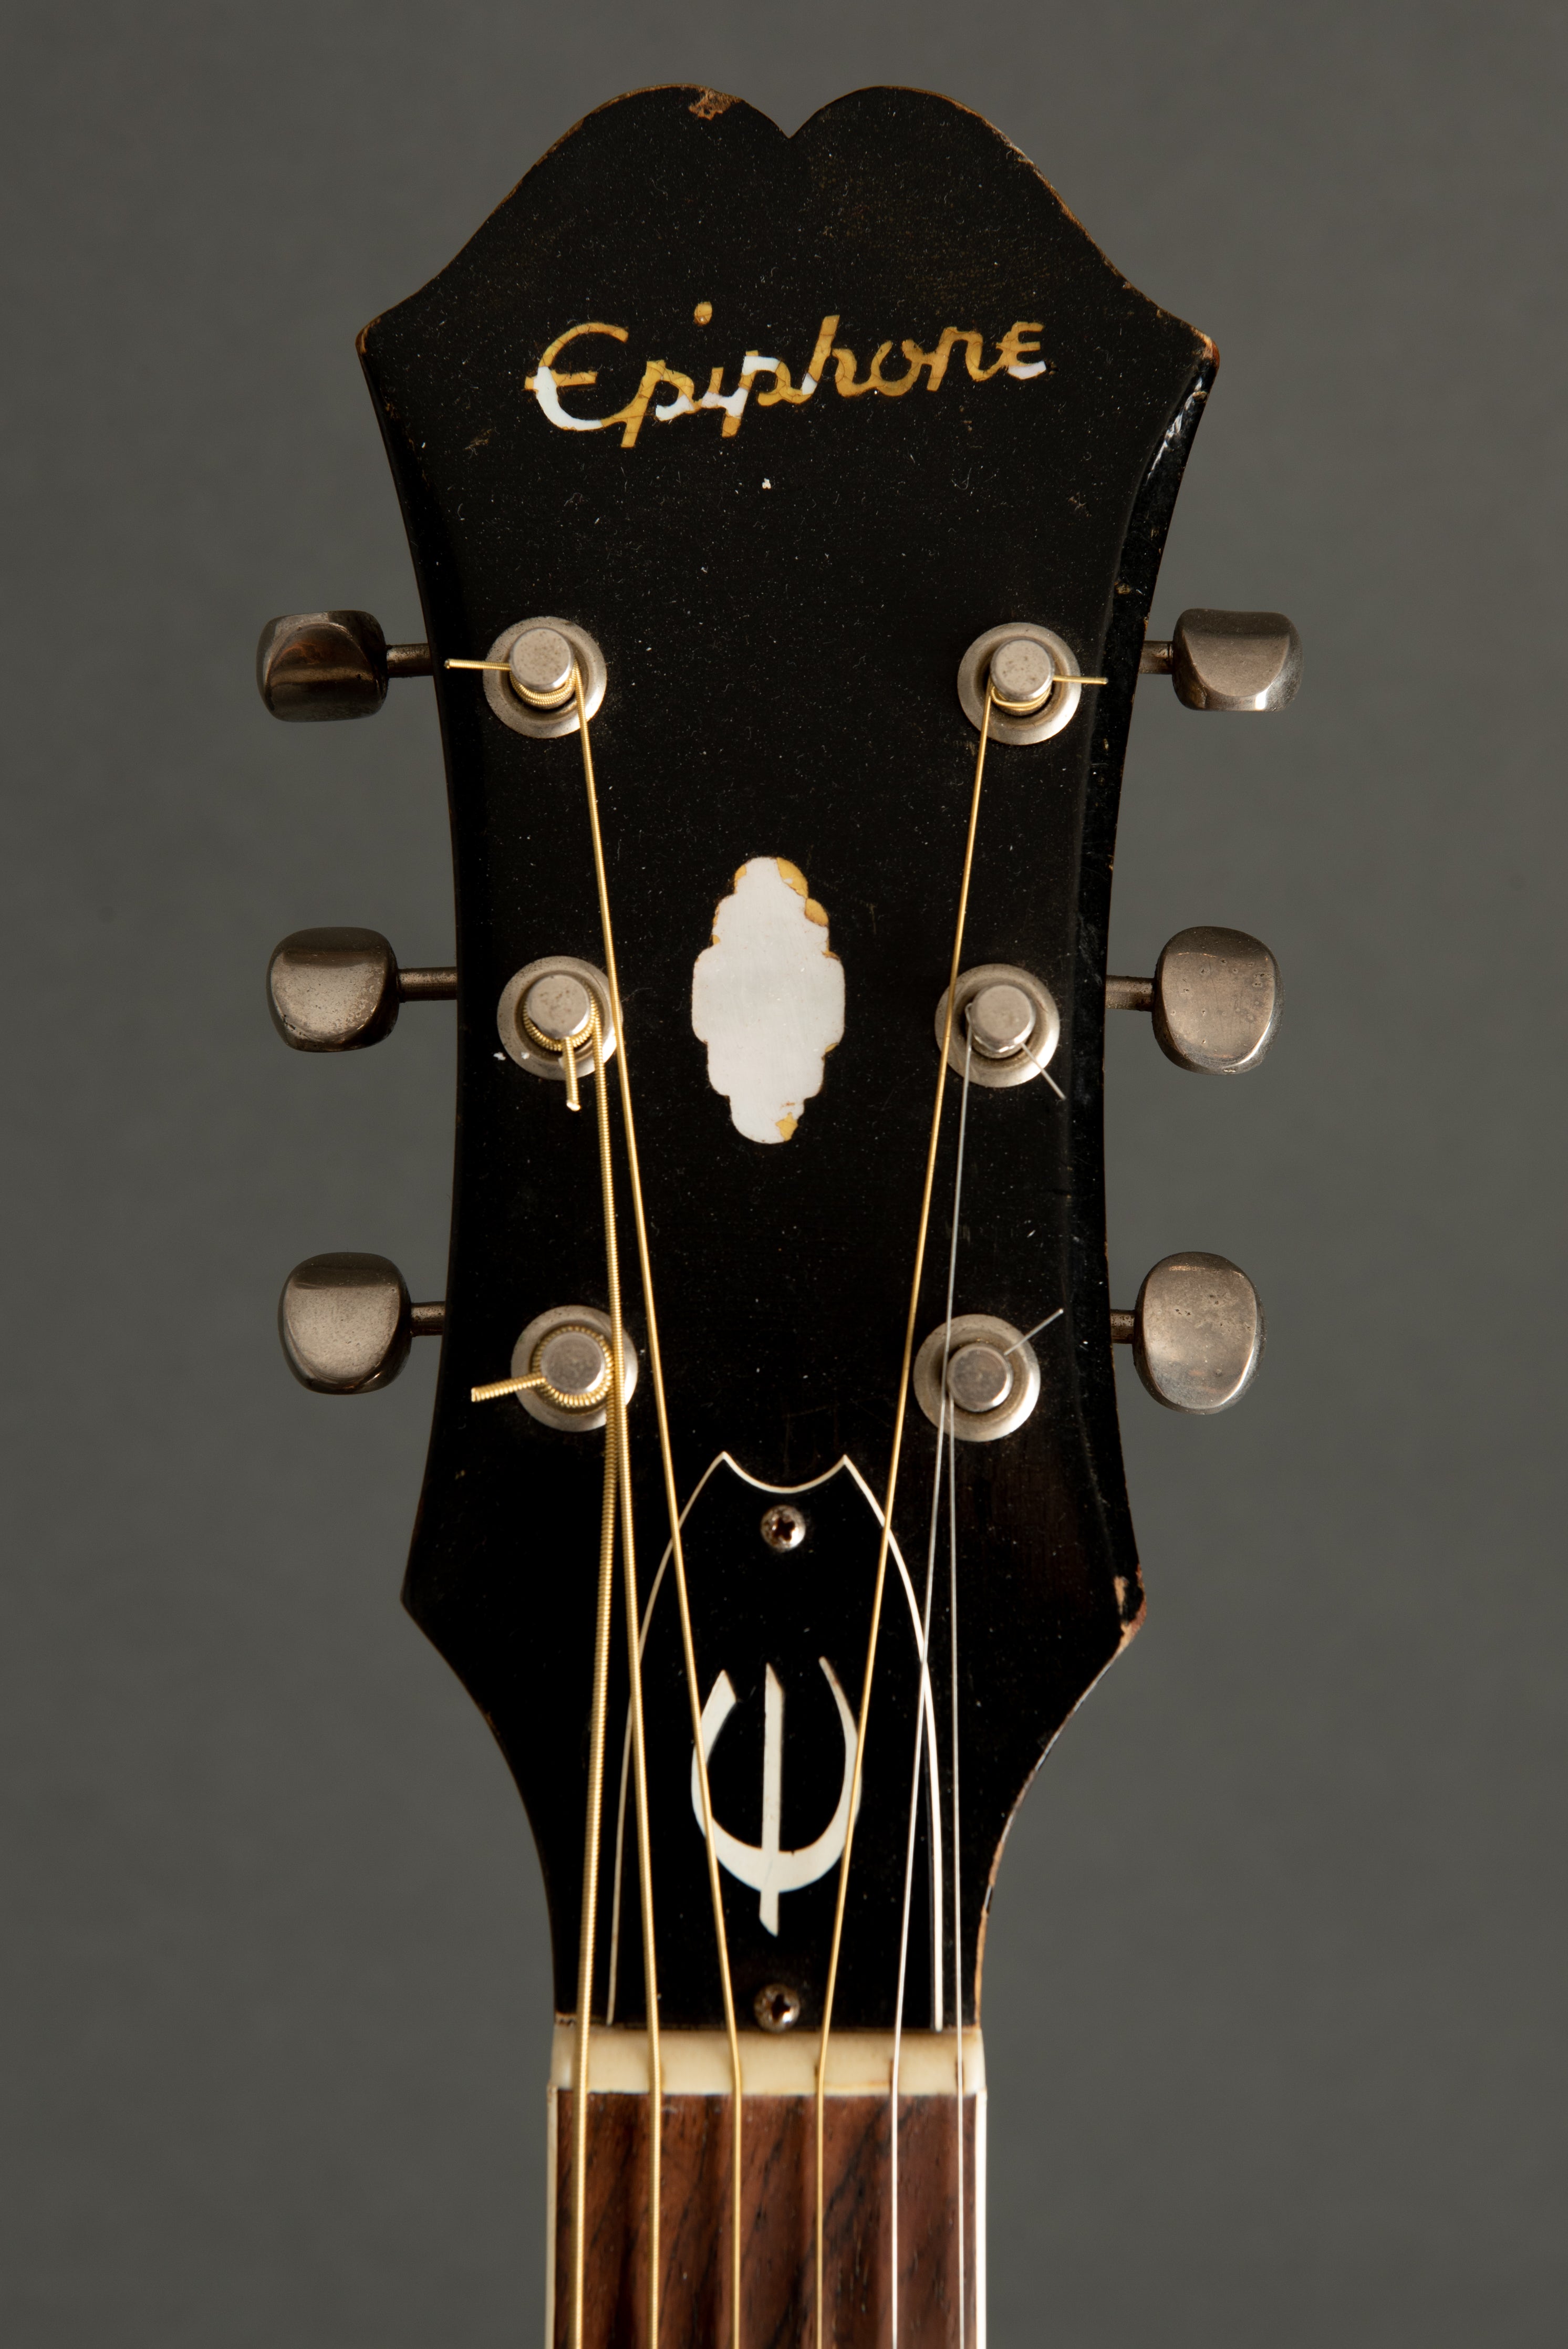 1965 Epiphone El Dorado Acoustic Guitar